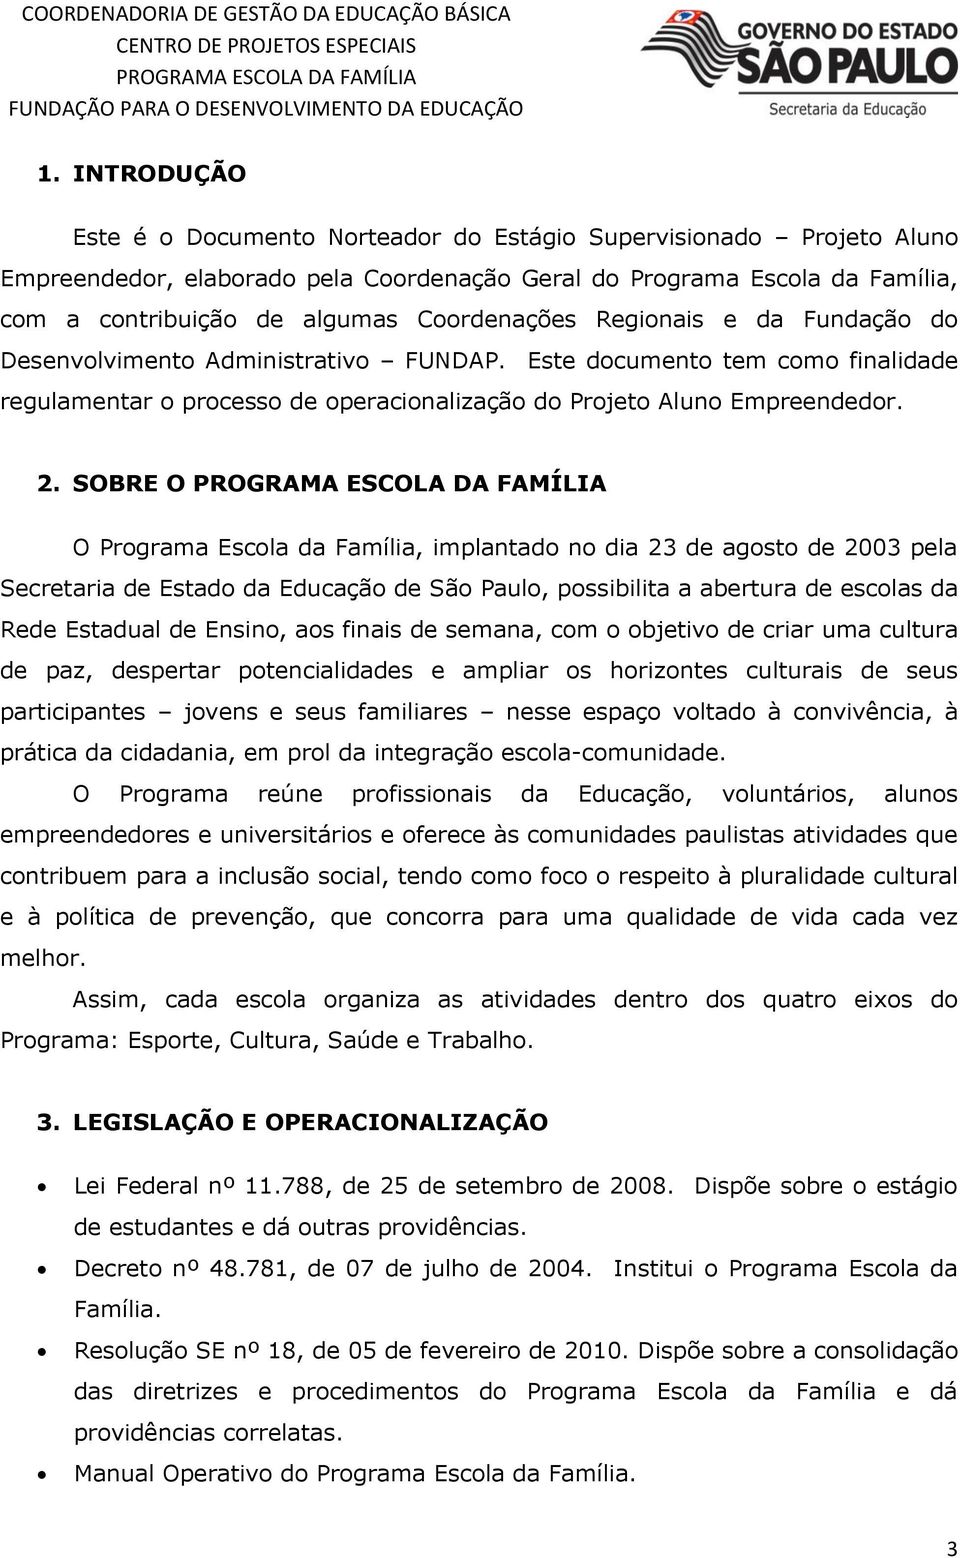 SOBRE O O Programa Escola da Família, implantado no dia 23 de agosto de 2003 pela Secretaria de Estado da Educação de São Paulo, possibilita a abertura de escolas da Rede Estadual de Ensino, aos